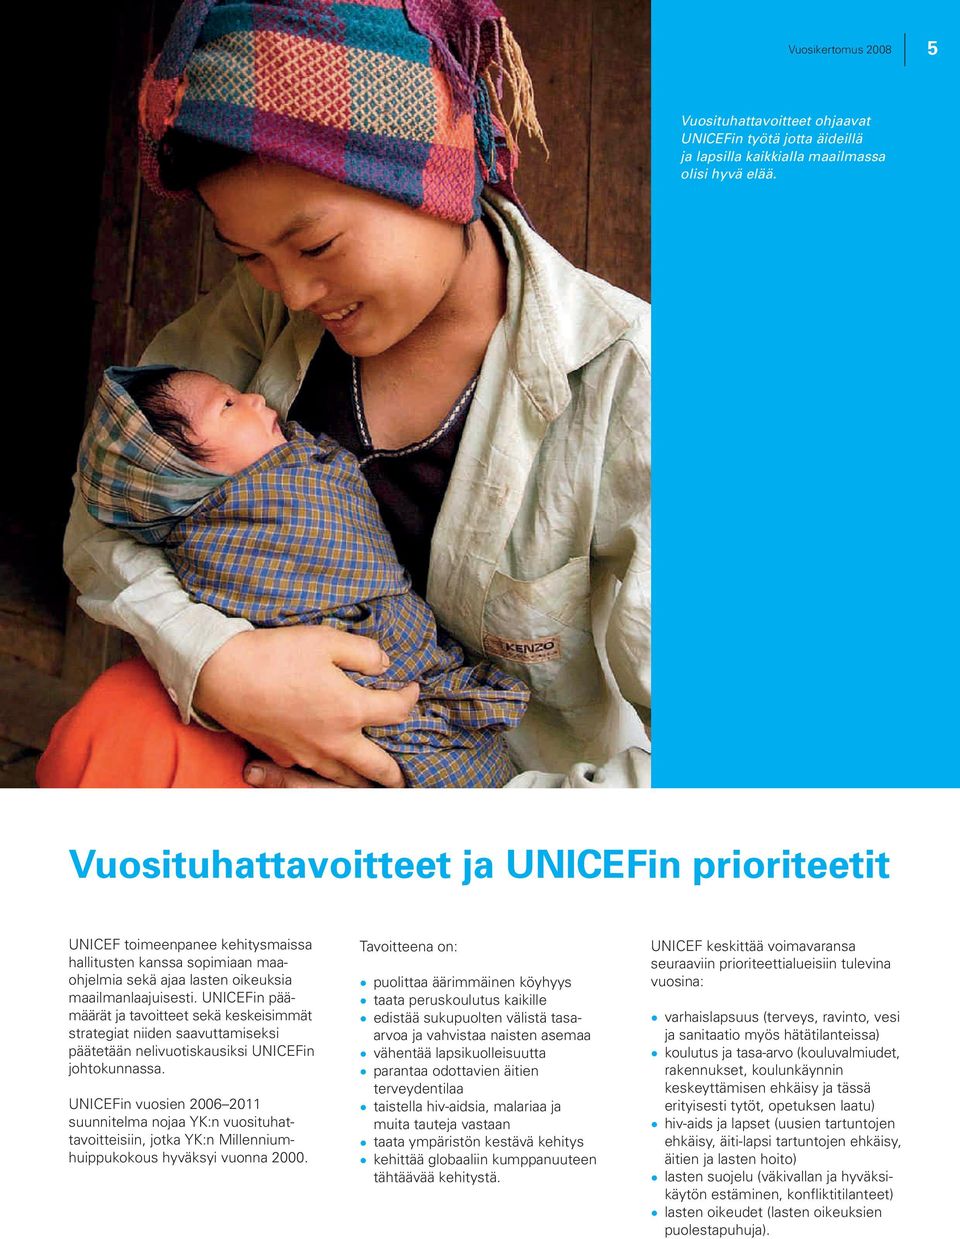 UNICEFin päämäärät ja tavoitteet sekä keskeisimmät strategiat niiden saavuttamiseksi päätetään nelivuotiskausiksi UNICEFin johtokunnassa.